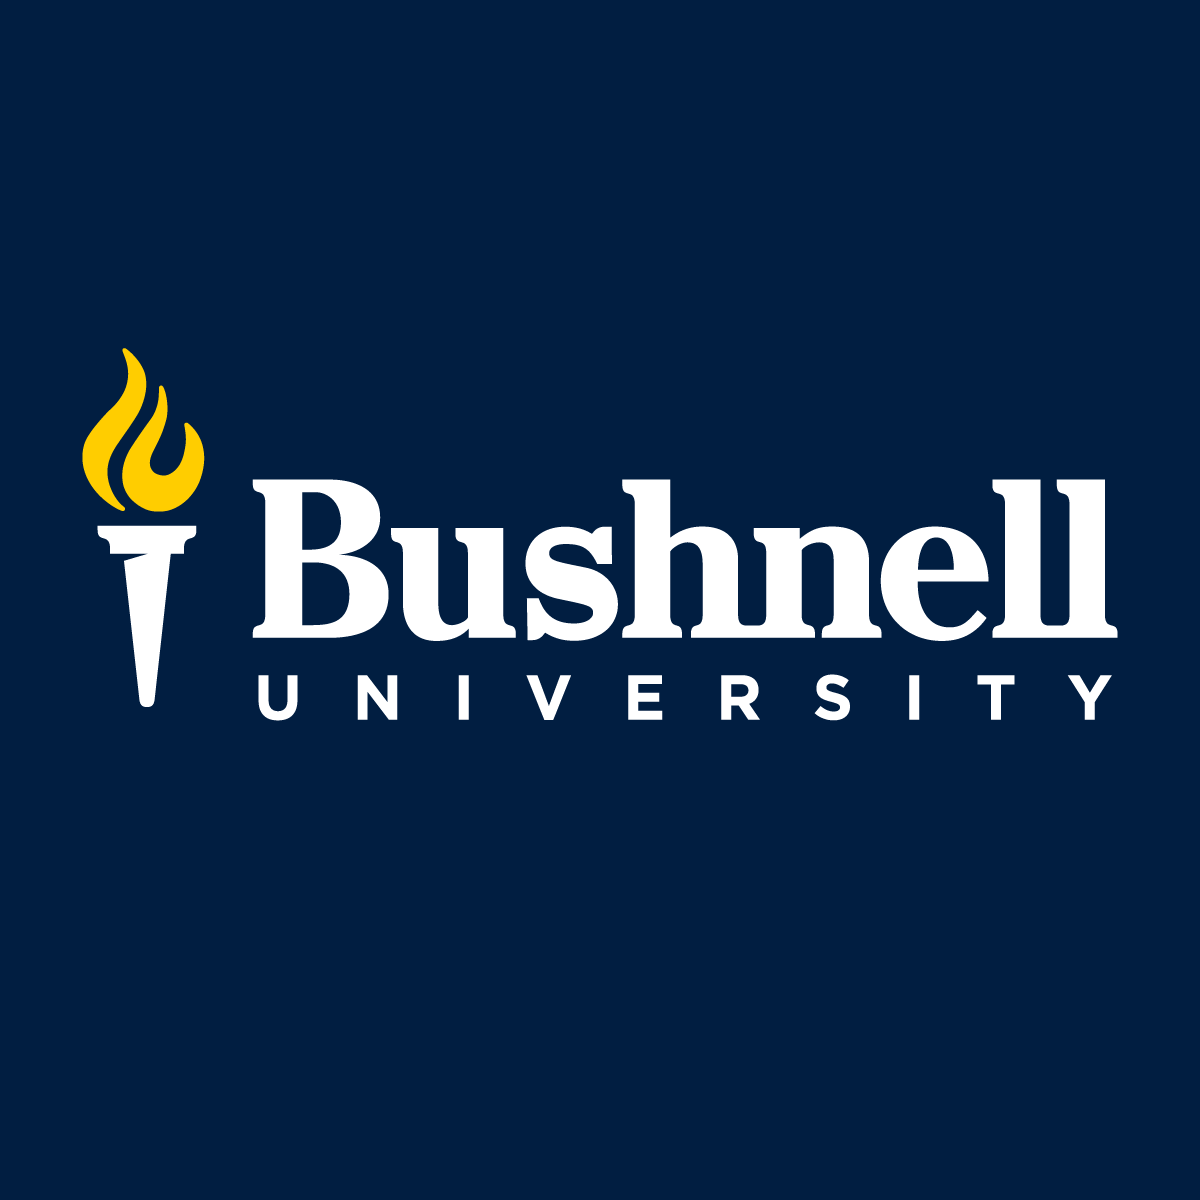 Bushnell University logo, Bushnell University